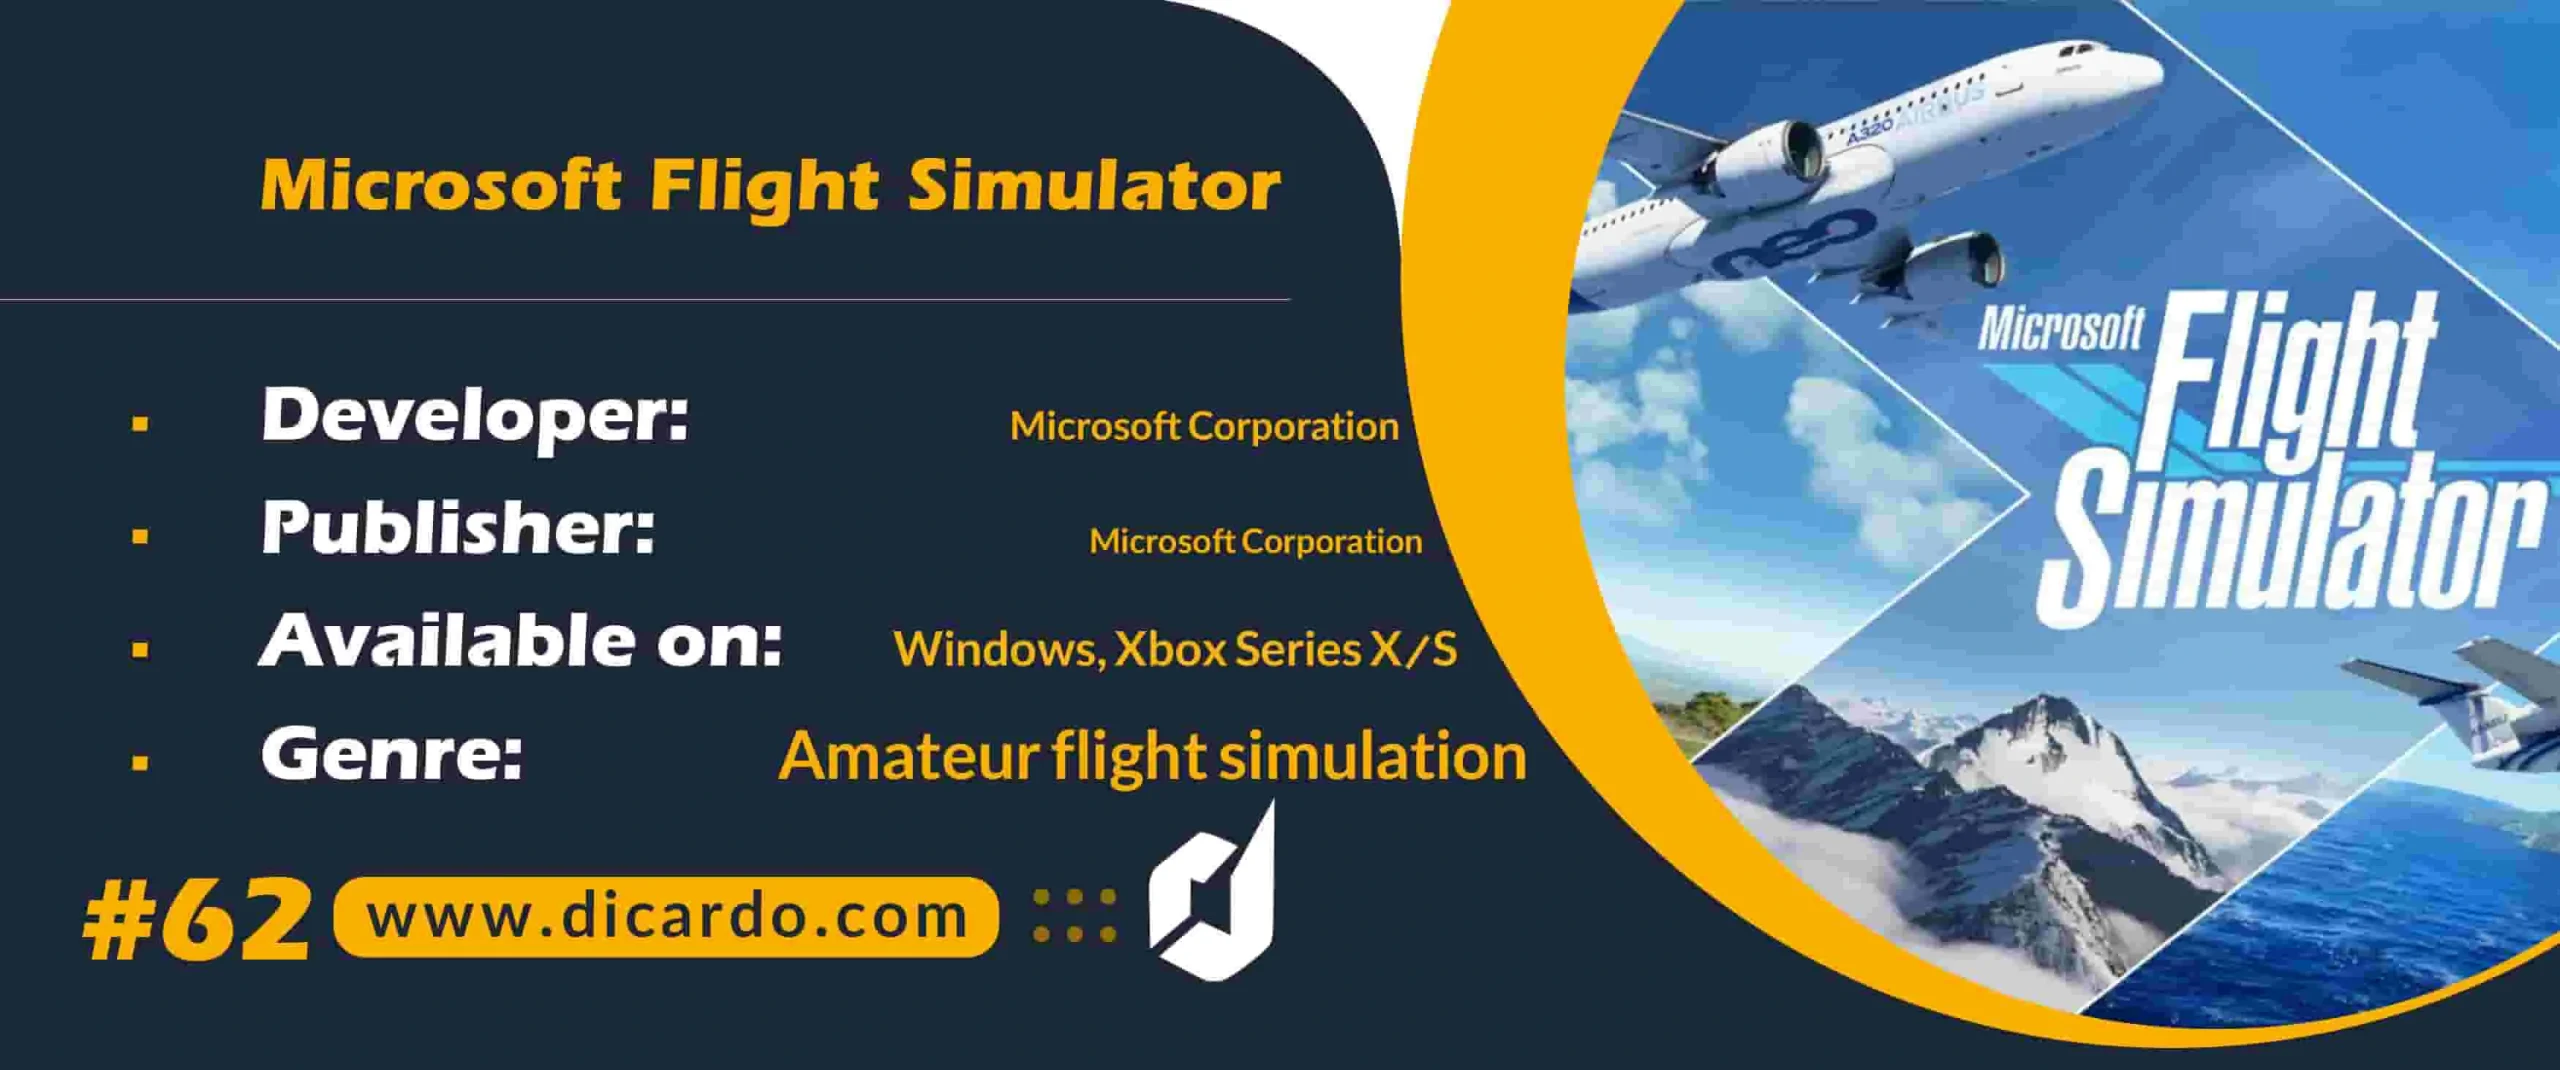 #62 میکروسافت فلایت سیمولیشر Microsoft Flight Simulator